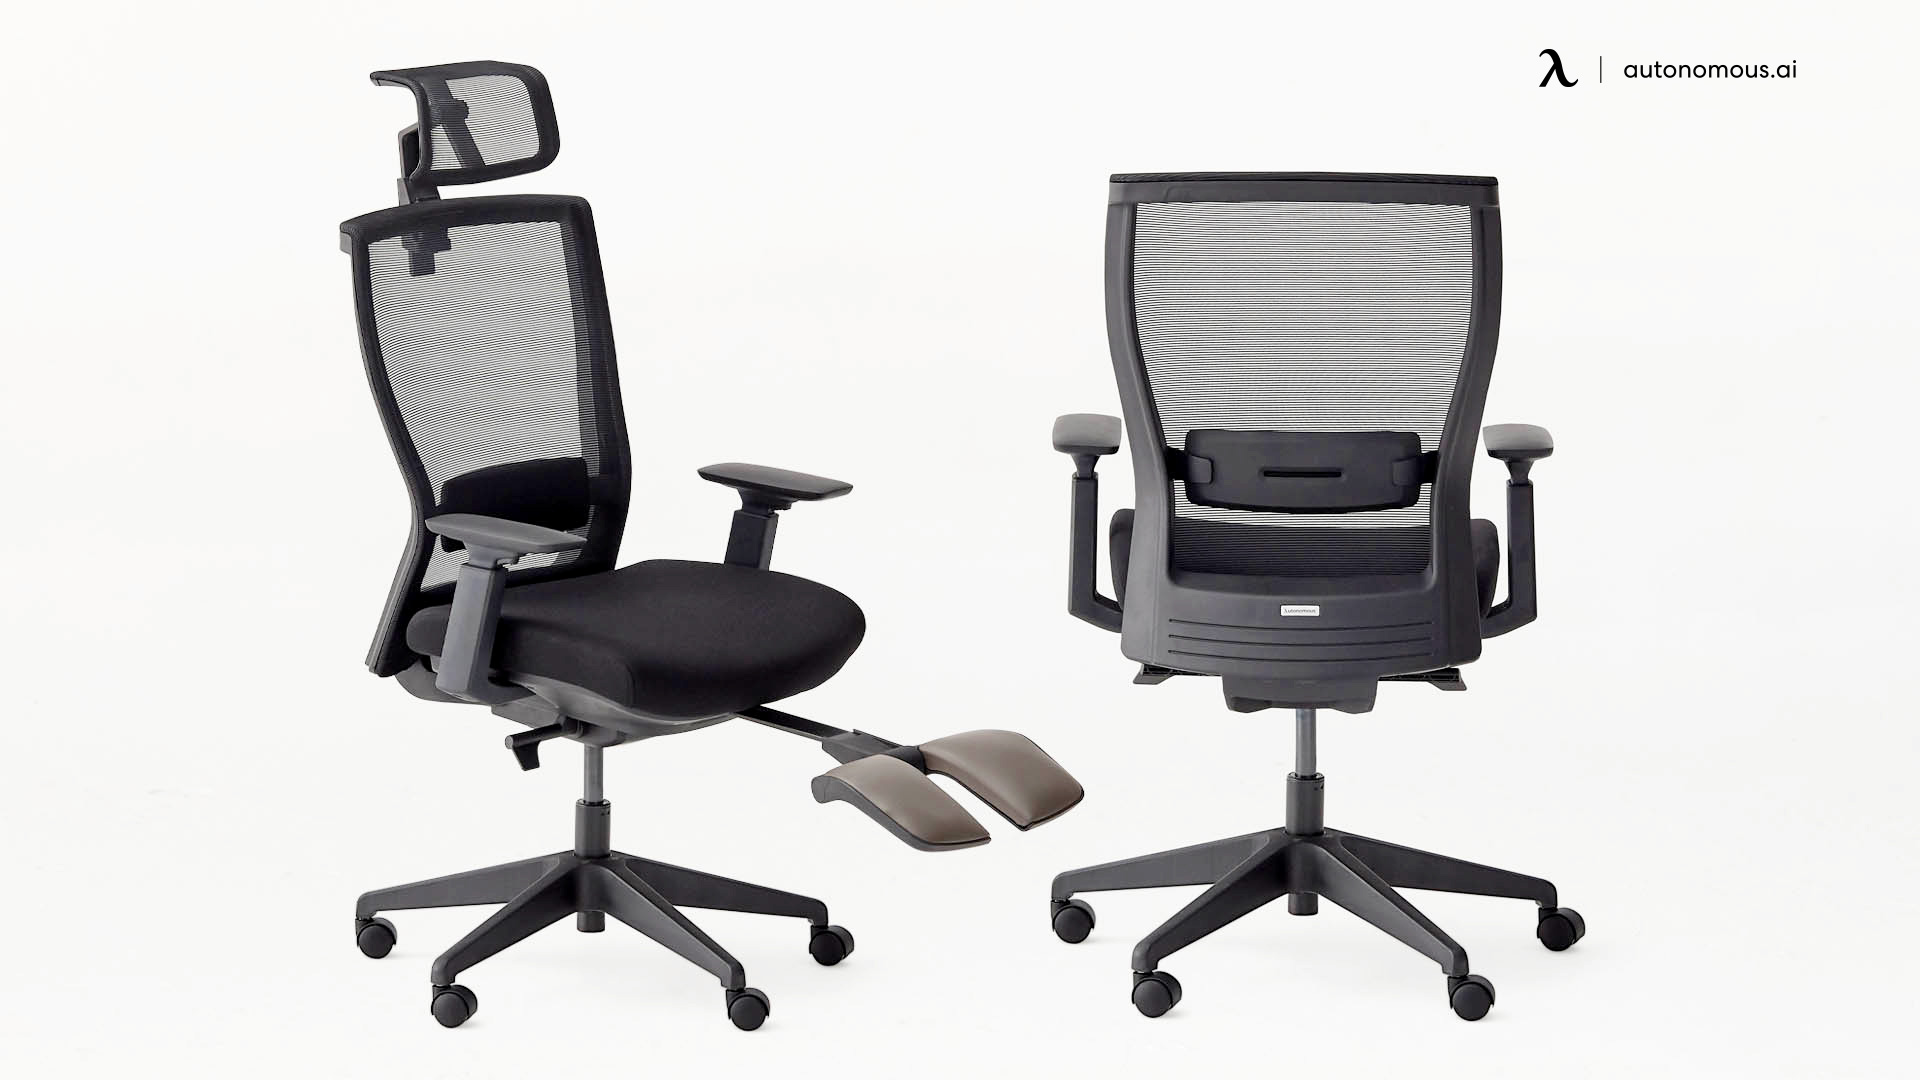 ErgoChair Recline office chair deals